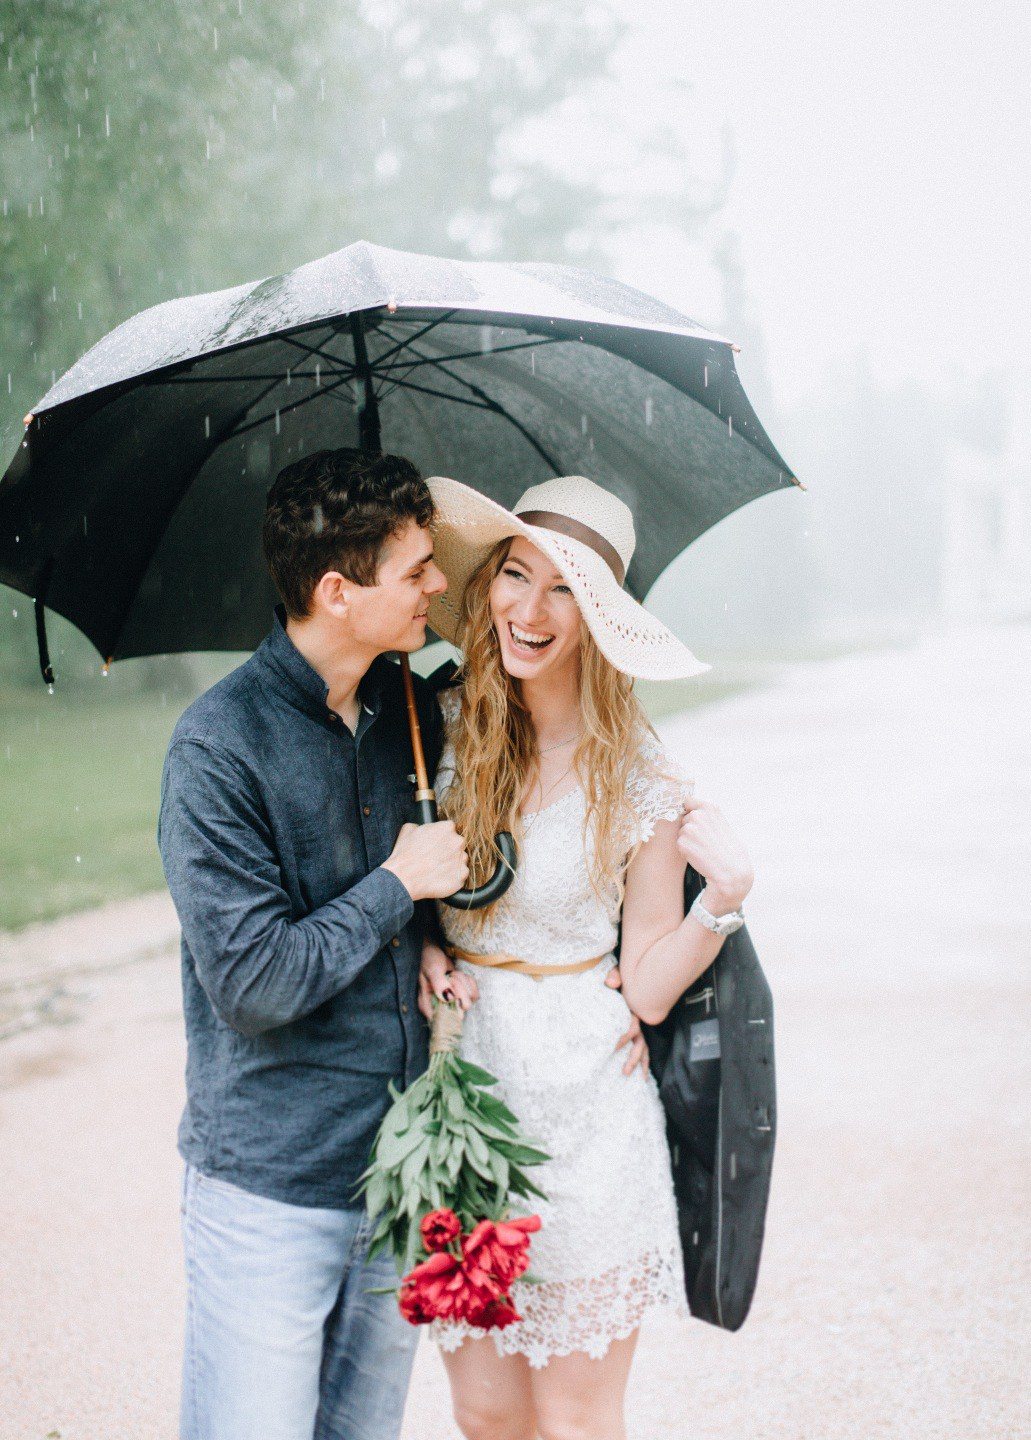 Romantic time. Свадьба под зонтом. Фотосессия с зонтом. Фотосессия под дождем лав стори. Лав стори с зонтом.